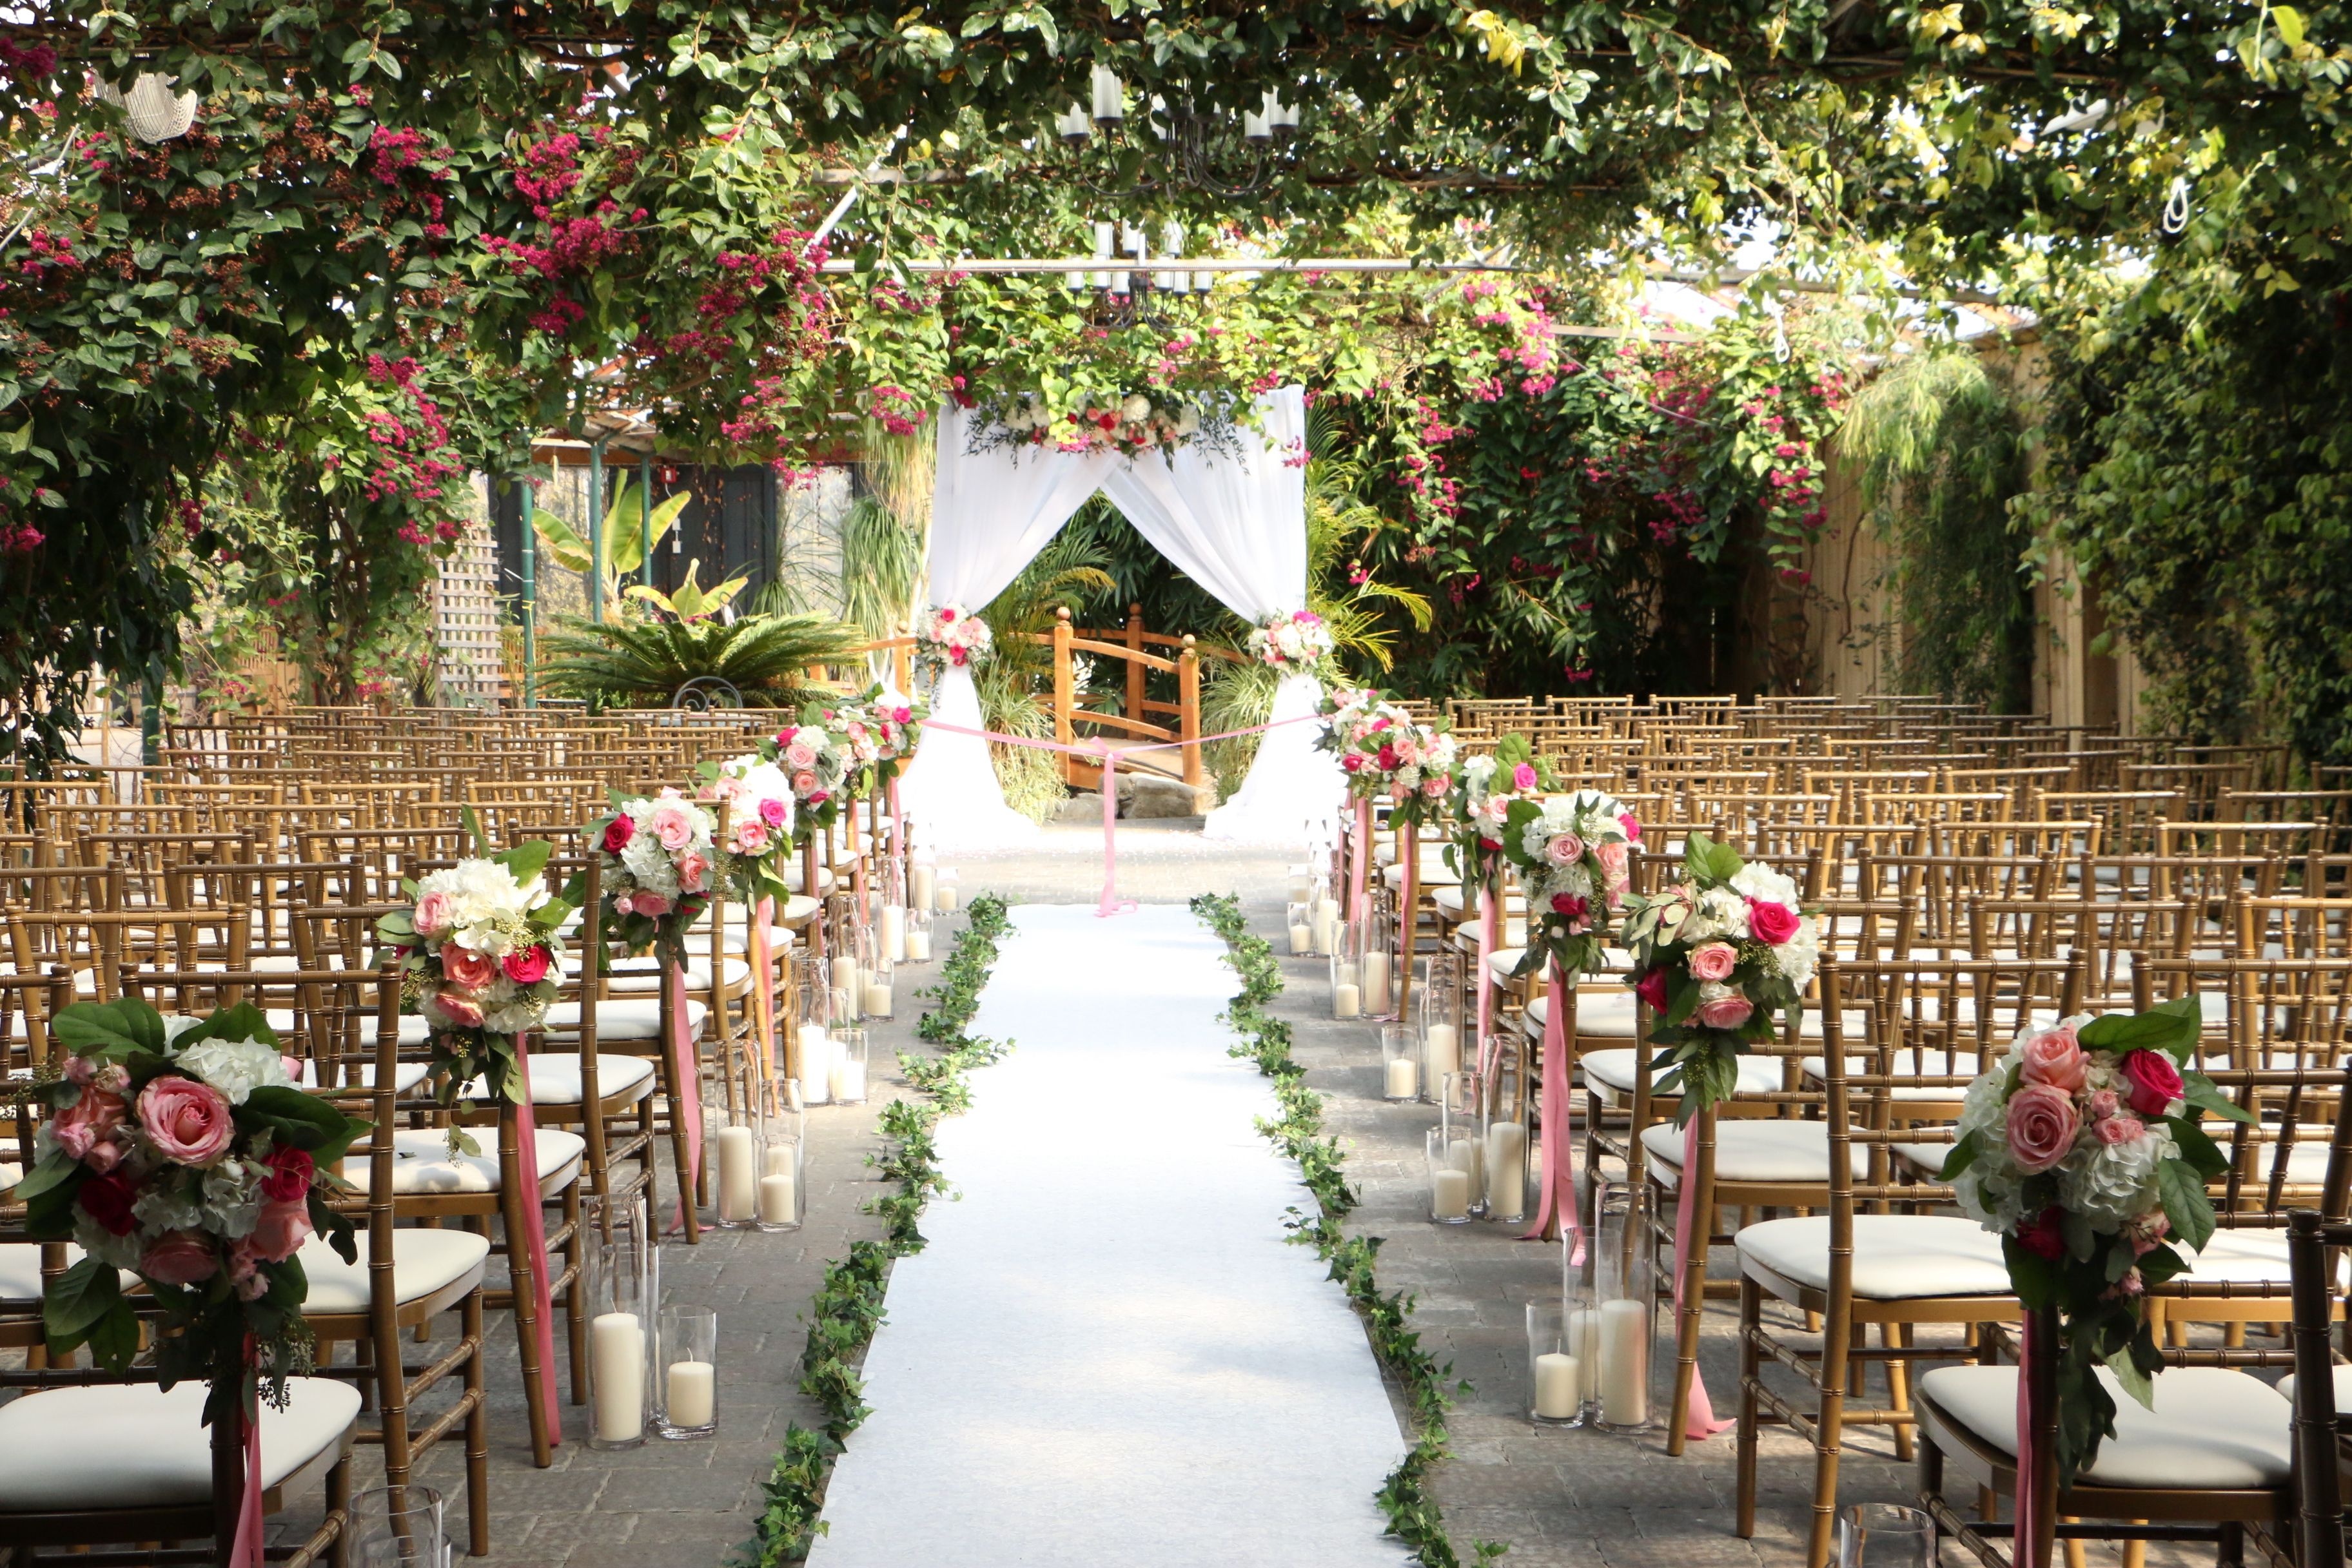 El lugar de una boda | Fuente: Shutterstock